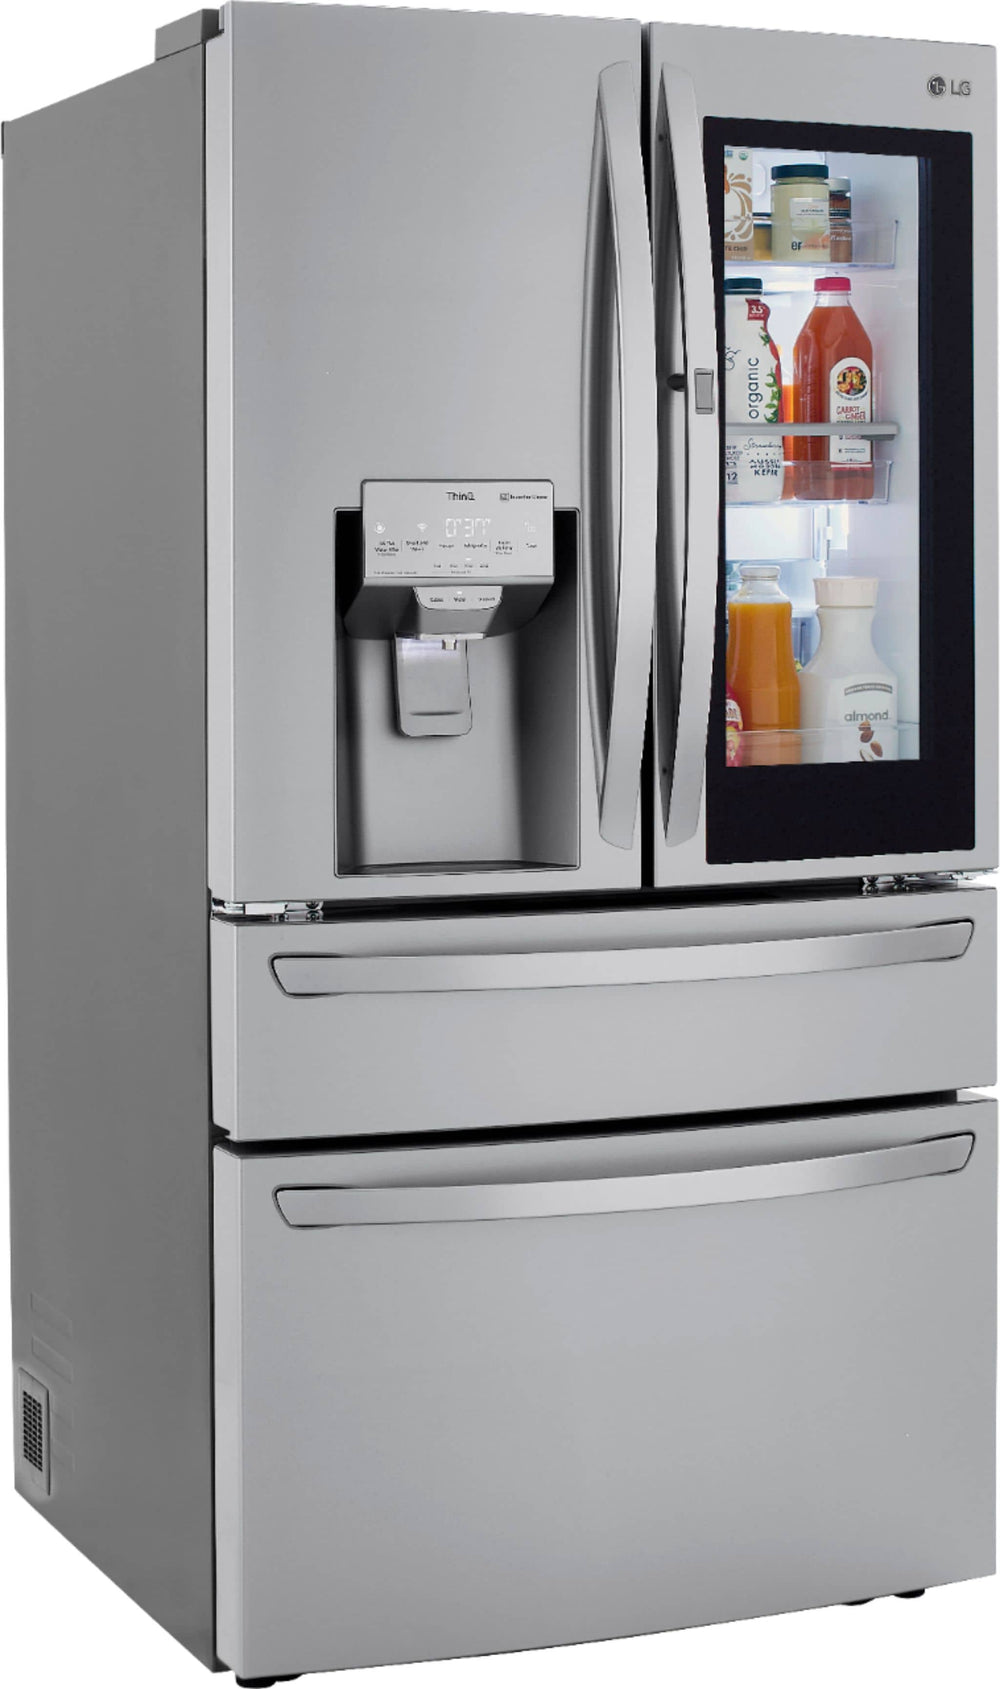 LG - 29.5 Cu. Ft. 4-Door French Door Refrigerator with InstaView Door-in-Door and Craft Ice - Stainless steel_1